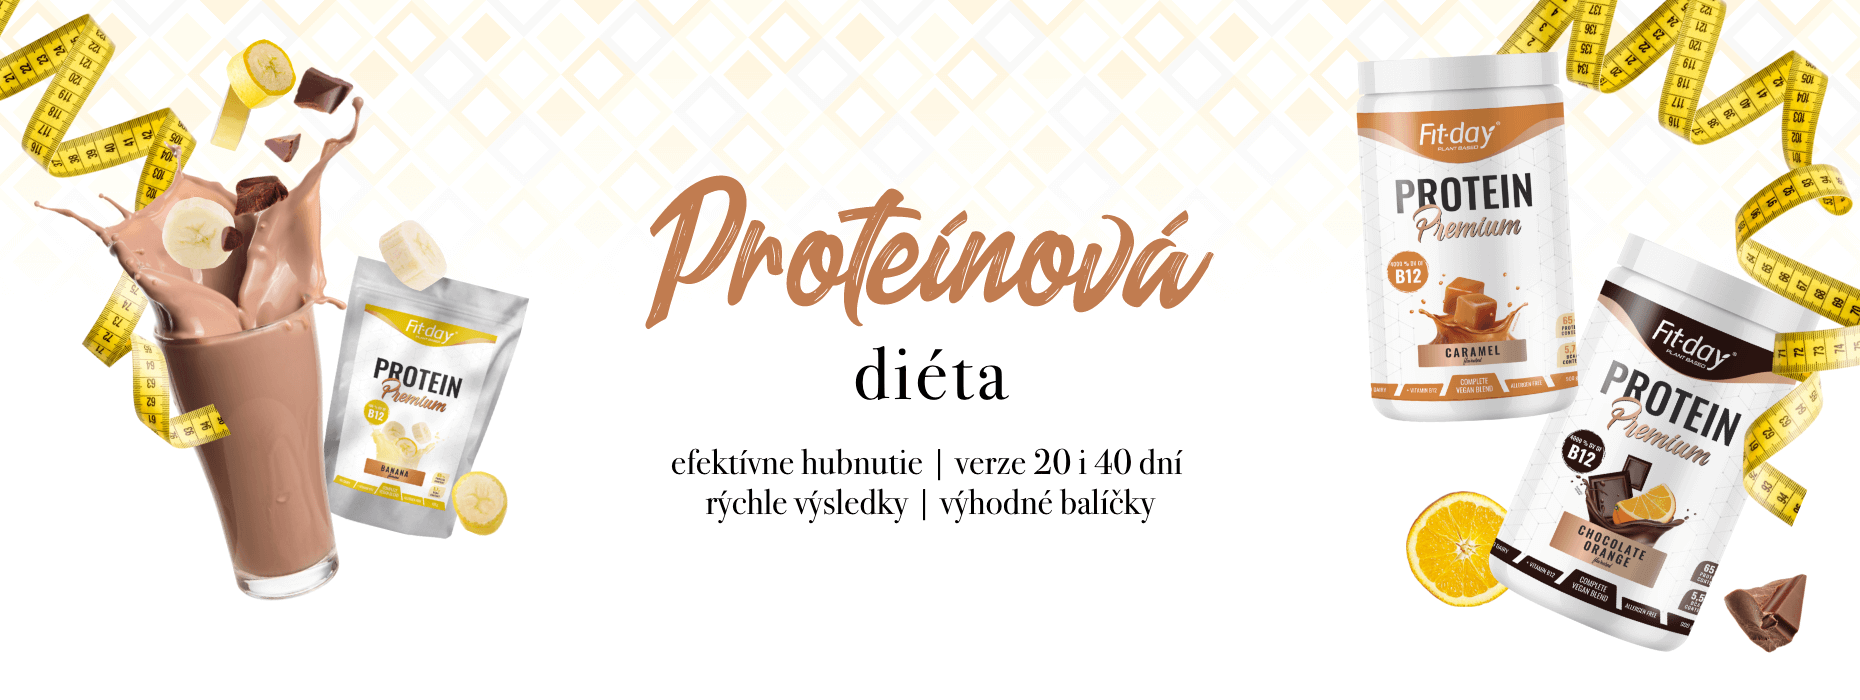 proteinova_dieta_1860x700_sk